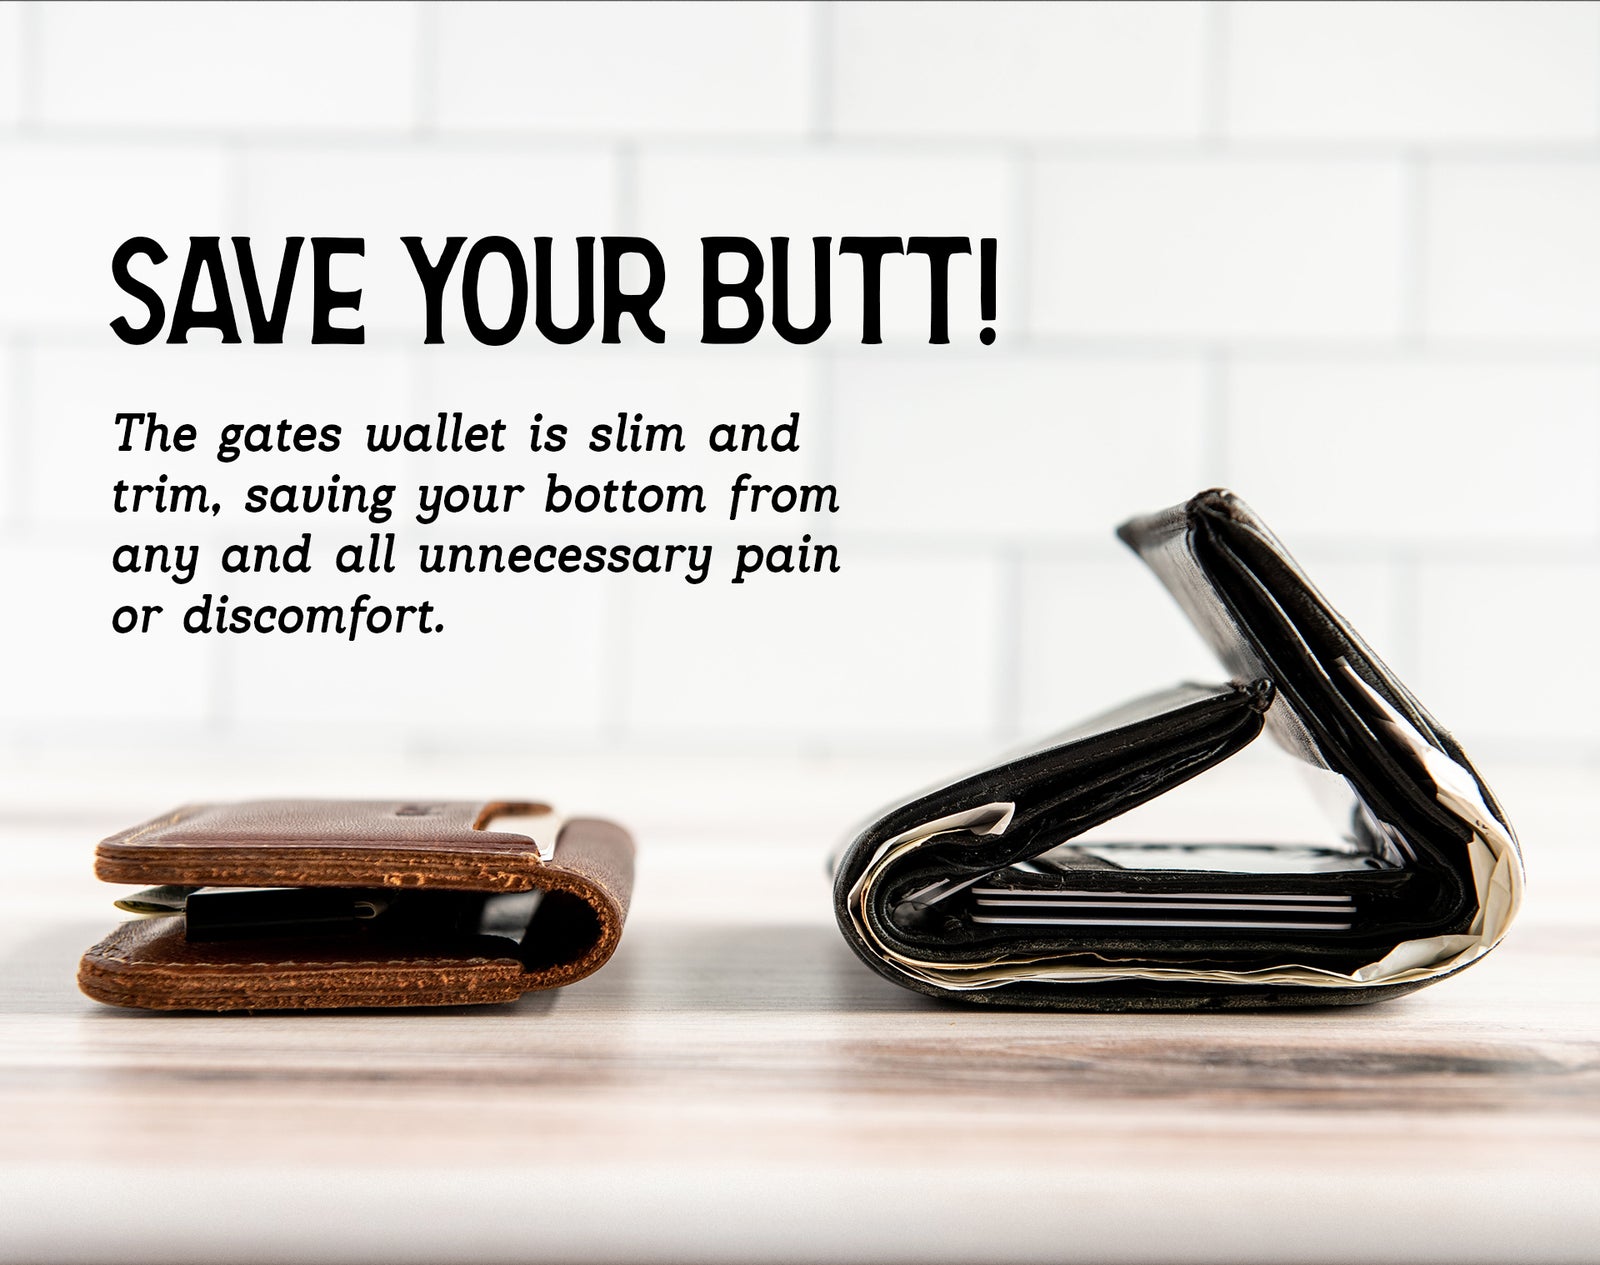 menswallet - / Money Clip Slim Vintage Leather Wallet For Men